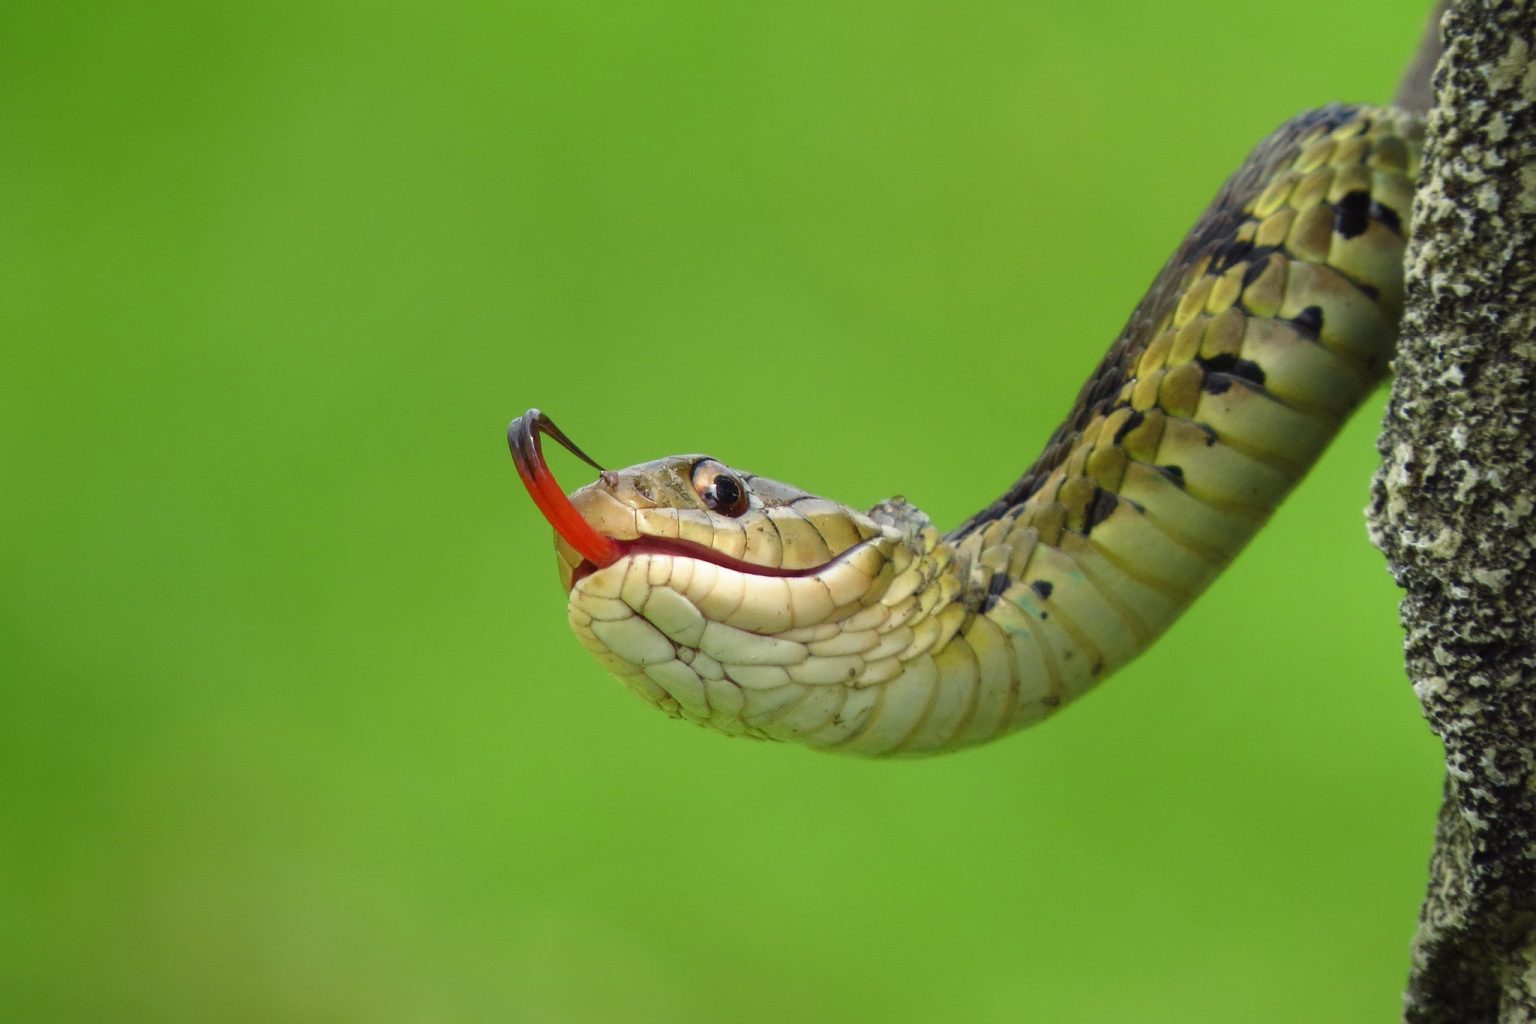 Tổng hợp hình ảnh về loài rắn đẹp nhất - [Kích thước hình ảnh: 1536x1024 px]